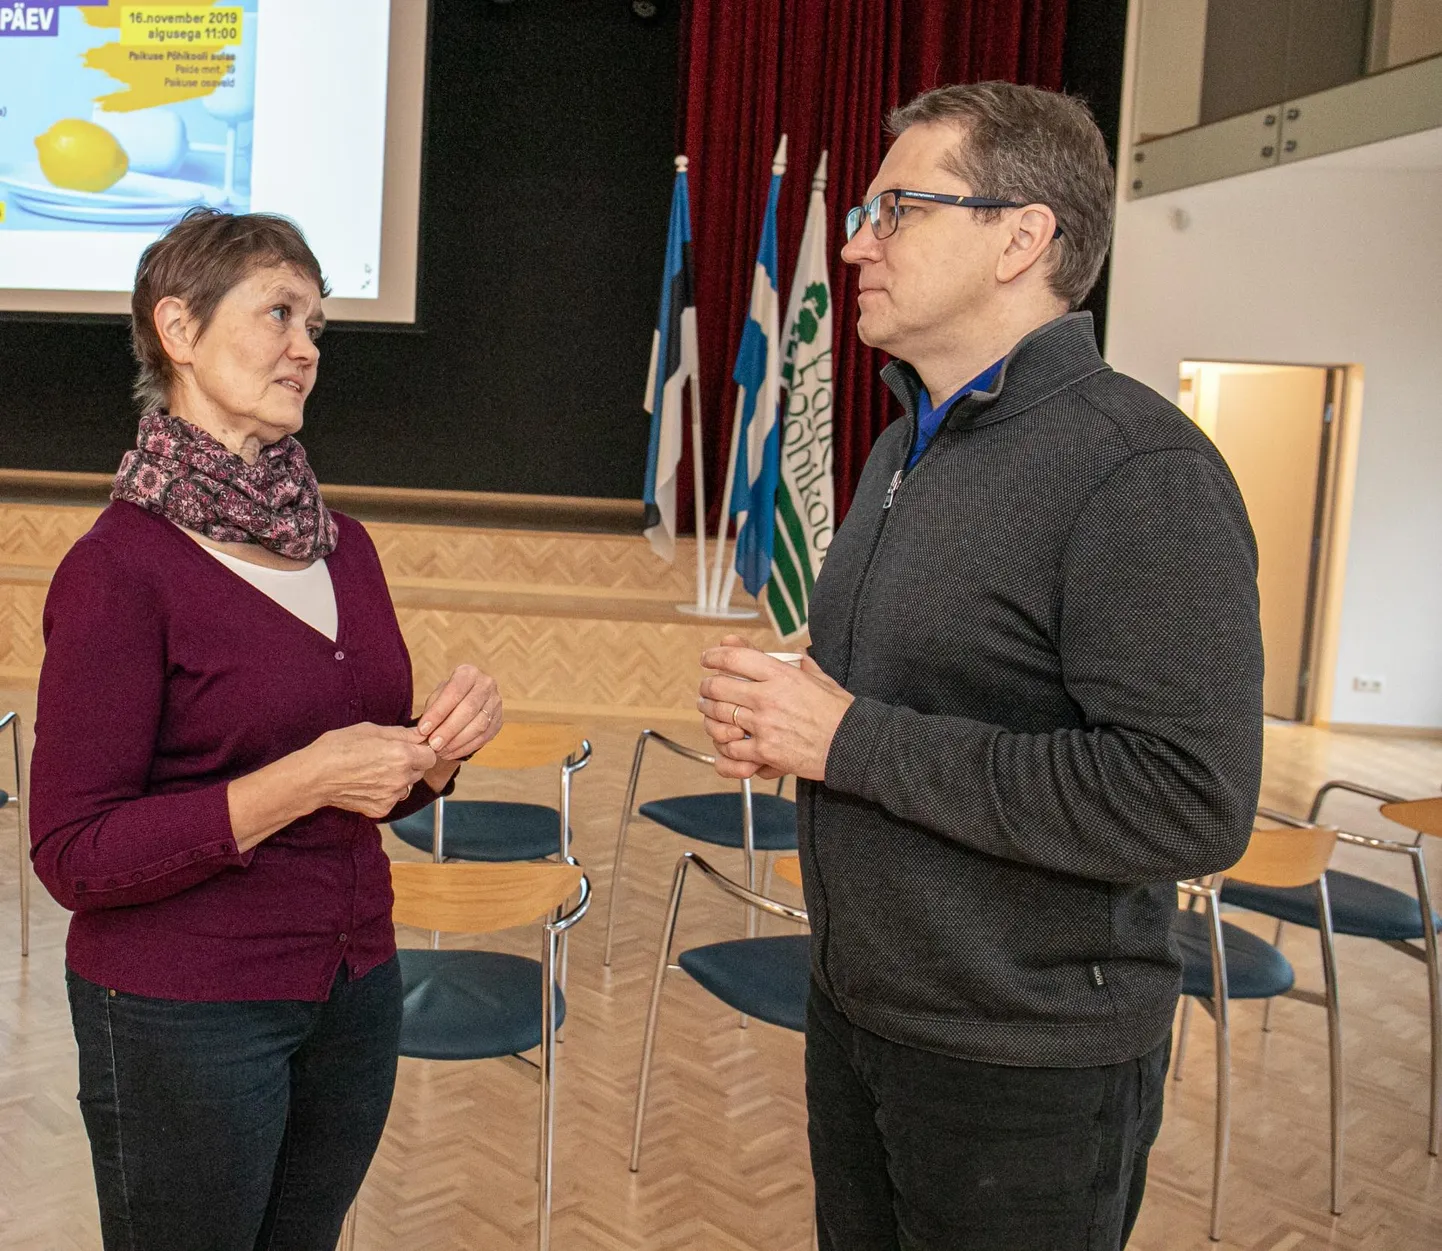 Paikuse kooli aulas läksid vestlushoogu kohalik perearst Anne Järvsaar ja tema pealinna kolleeg Eero Merilind.